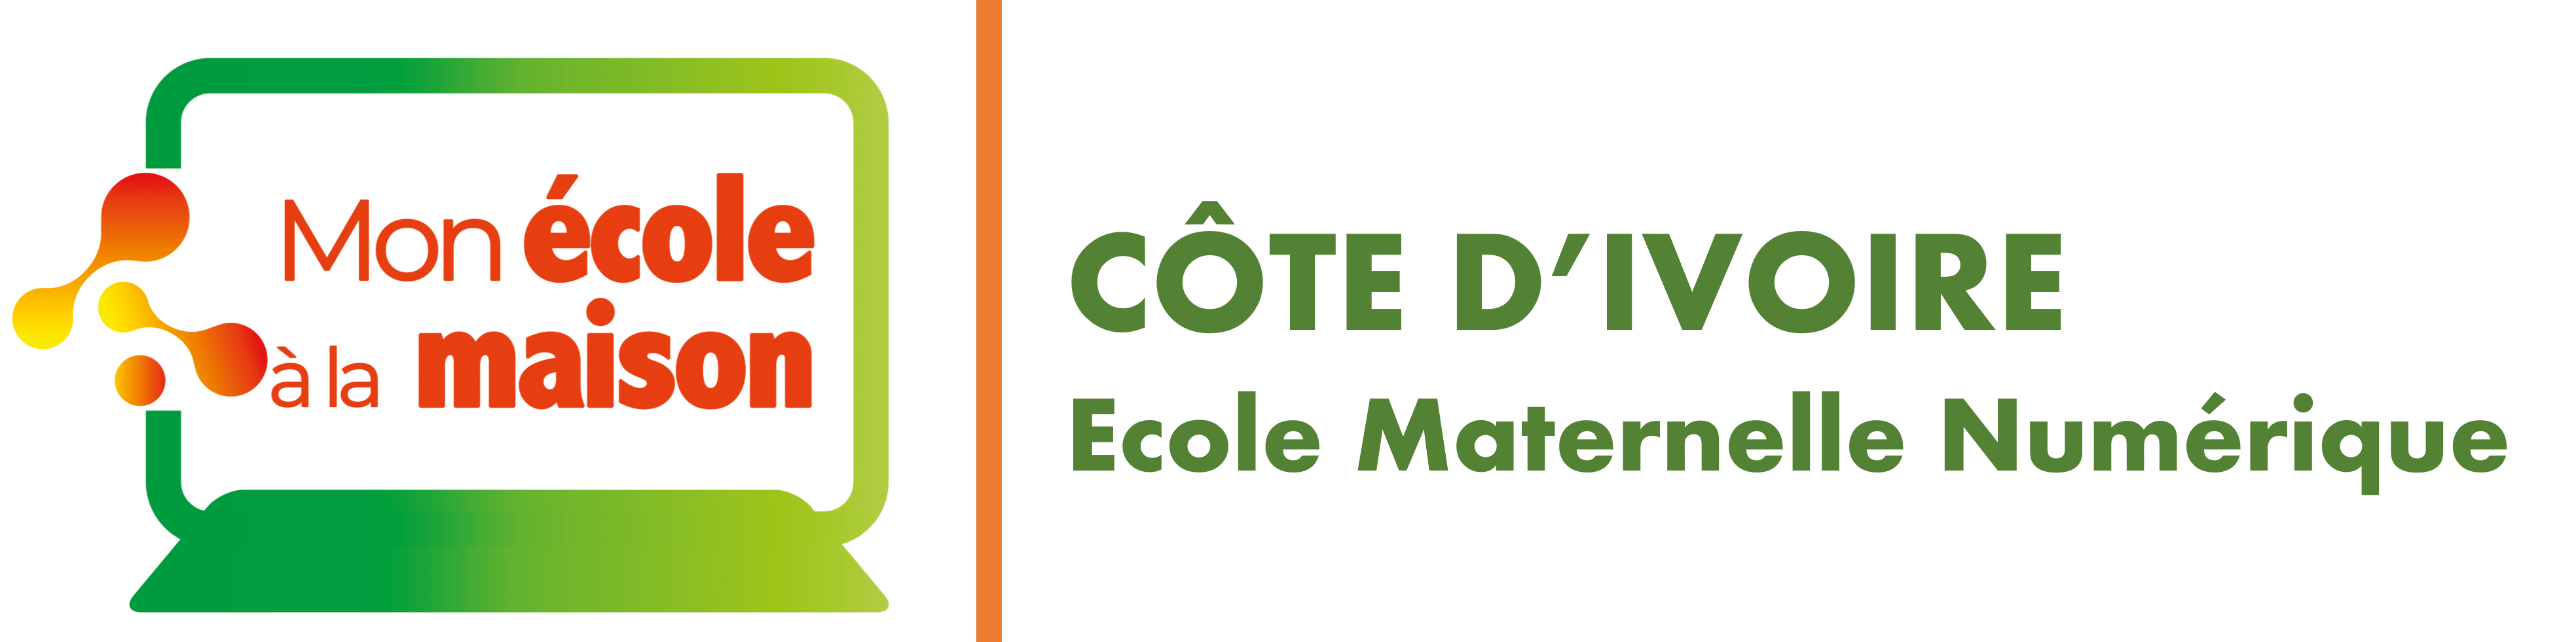 CÔTE D'IVOIRE École Maternelle Numérique